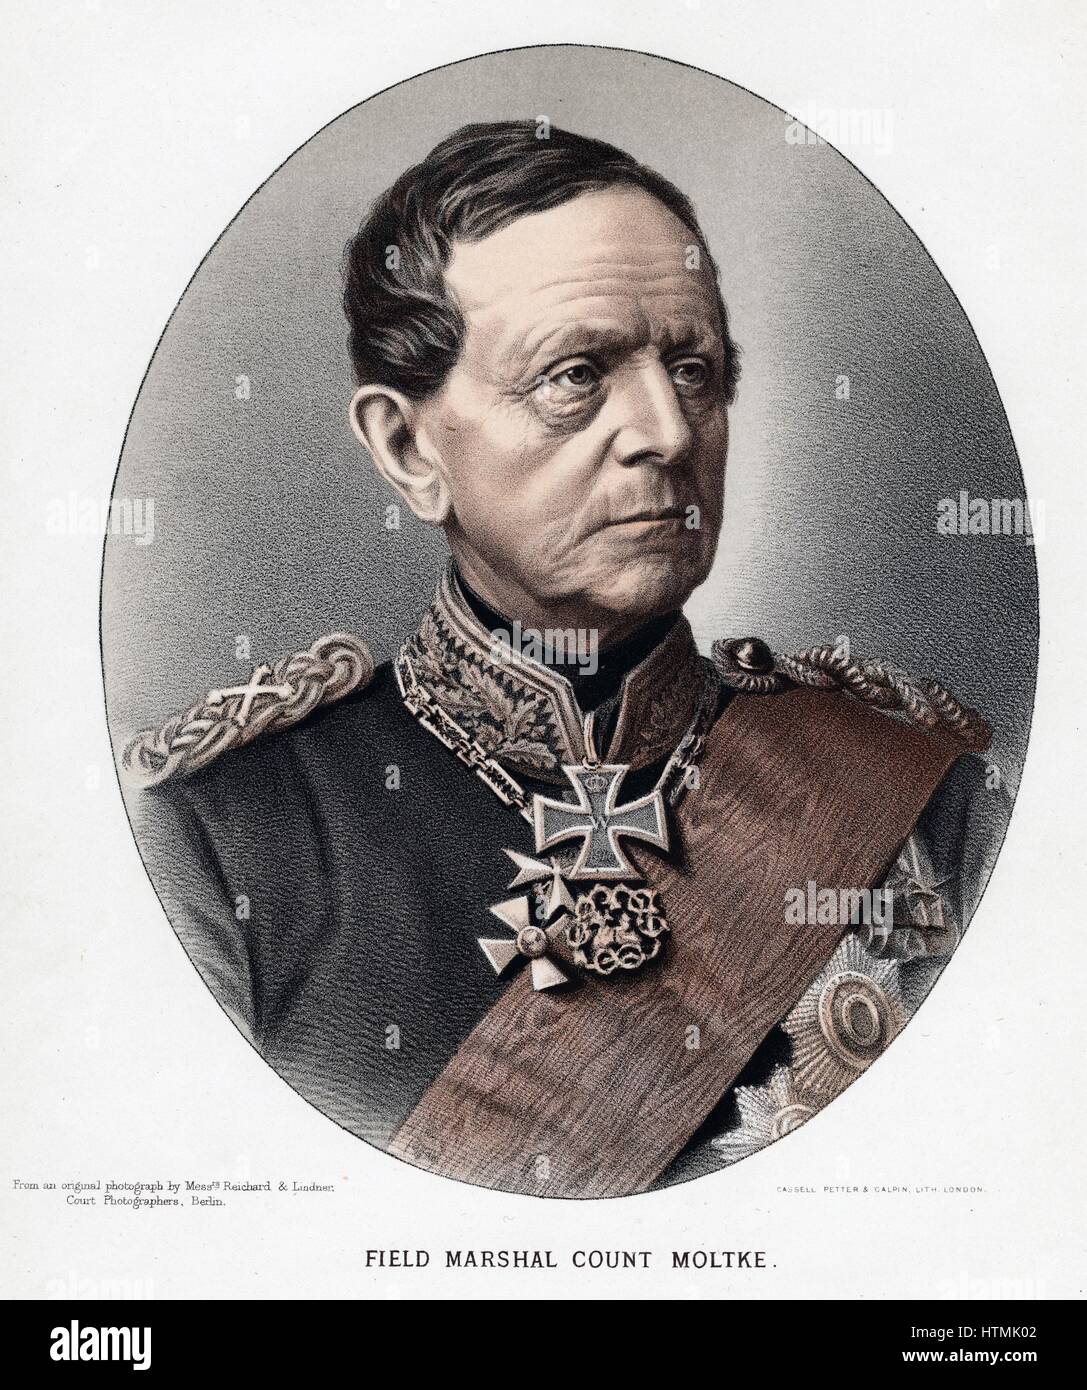 Helmut Karl Bernard, comte von Moltke (1800-1891) général prussien/statesmasn allemand et. Lithographie teintée publié c1880 Banque D'Images